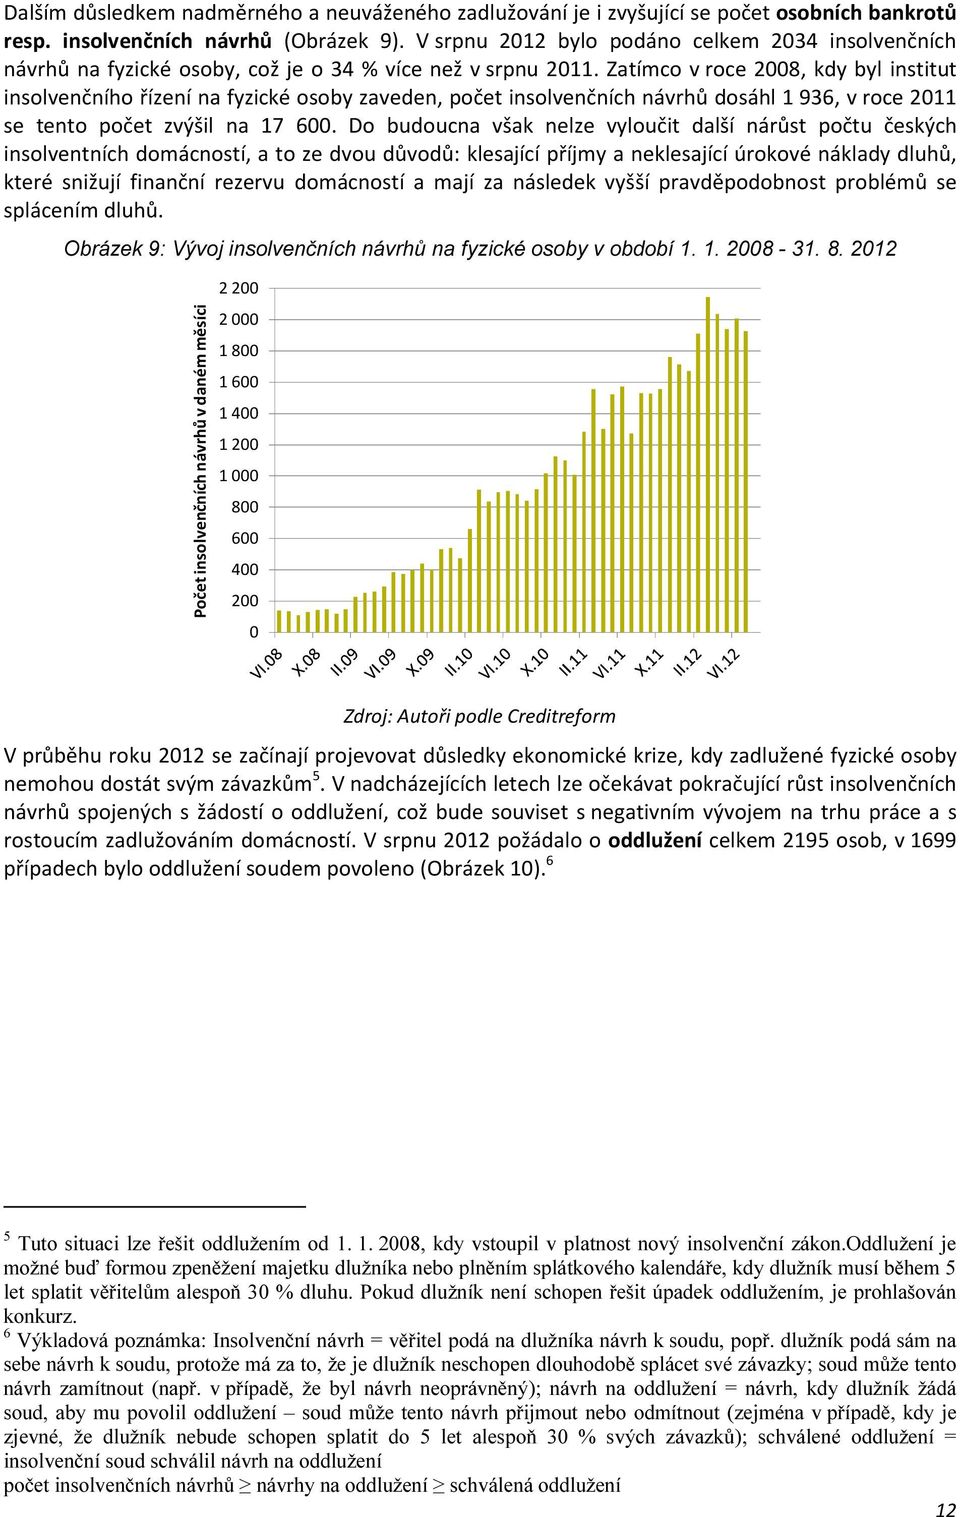 Zatímco v roce 2008, kdy byl institut insolvenčního řízení na fyzické osoby zaveden, počet insolvenčních návrhů dosáhl 1 936, v roce 2011 se tento počet zvýšil na 17 600.